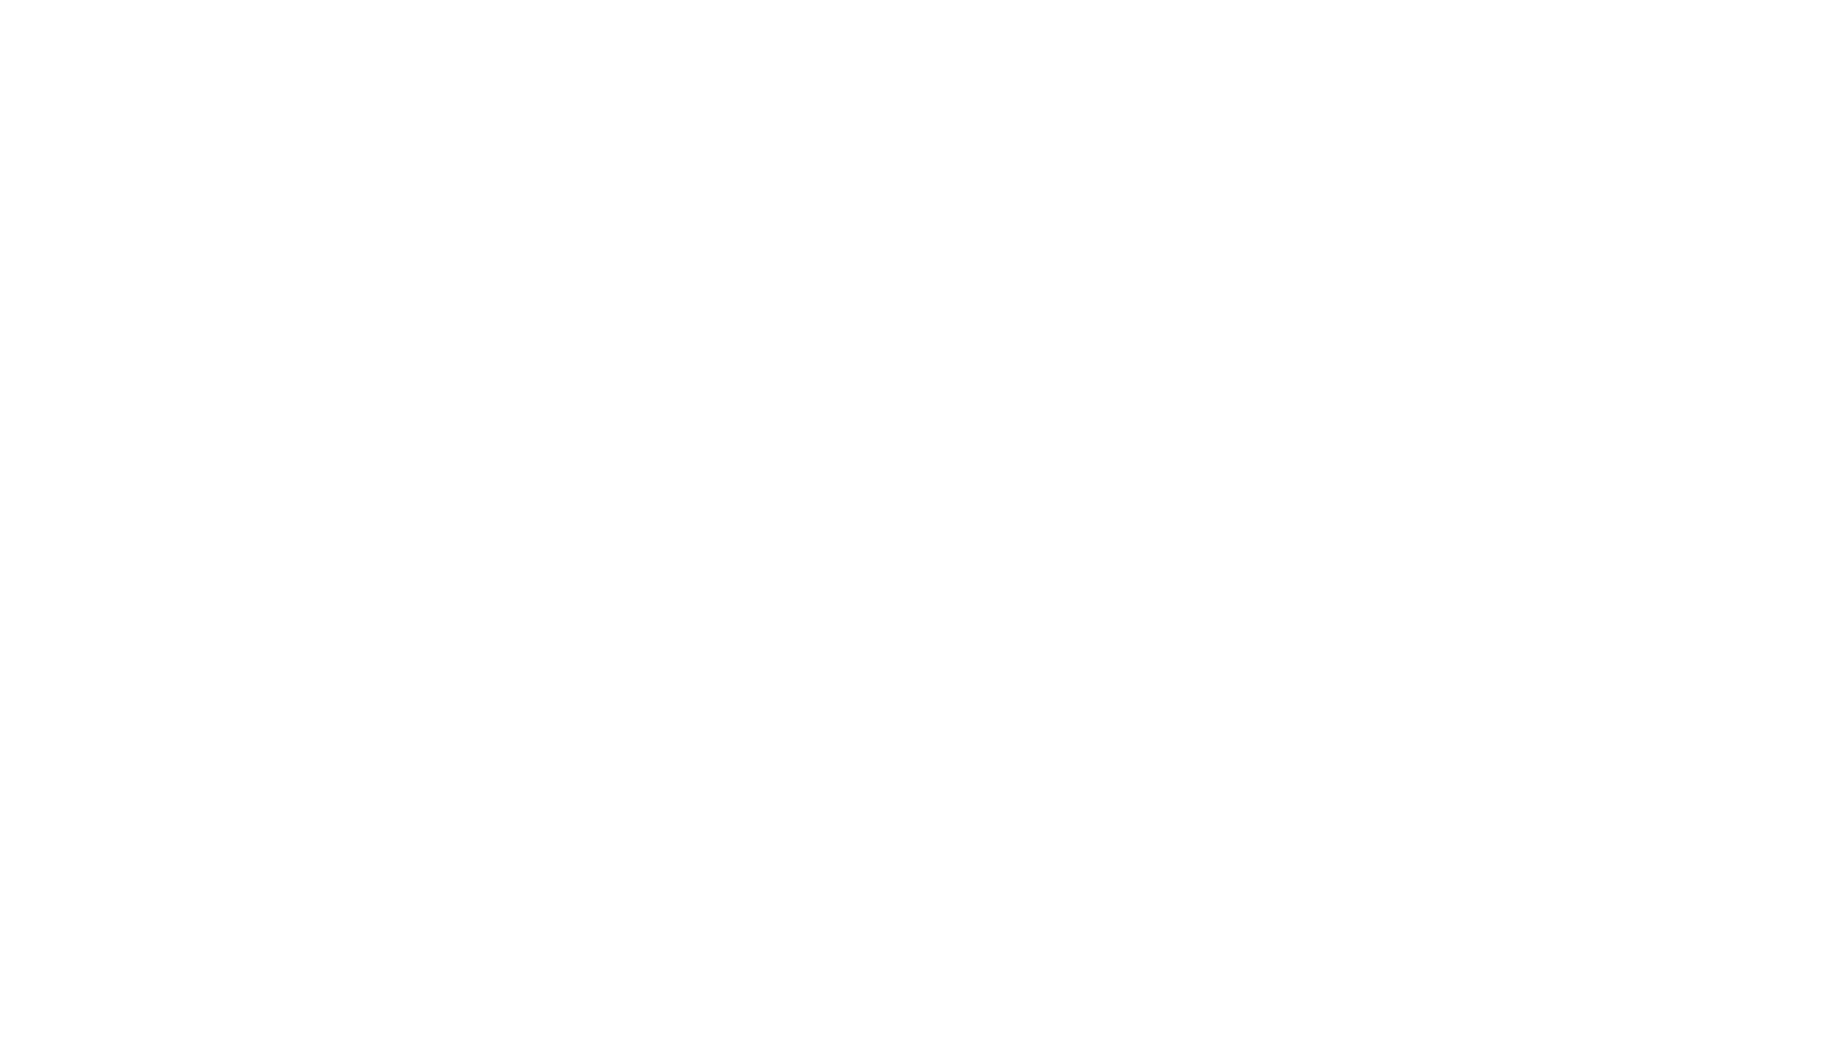 Columba College